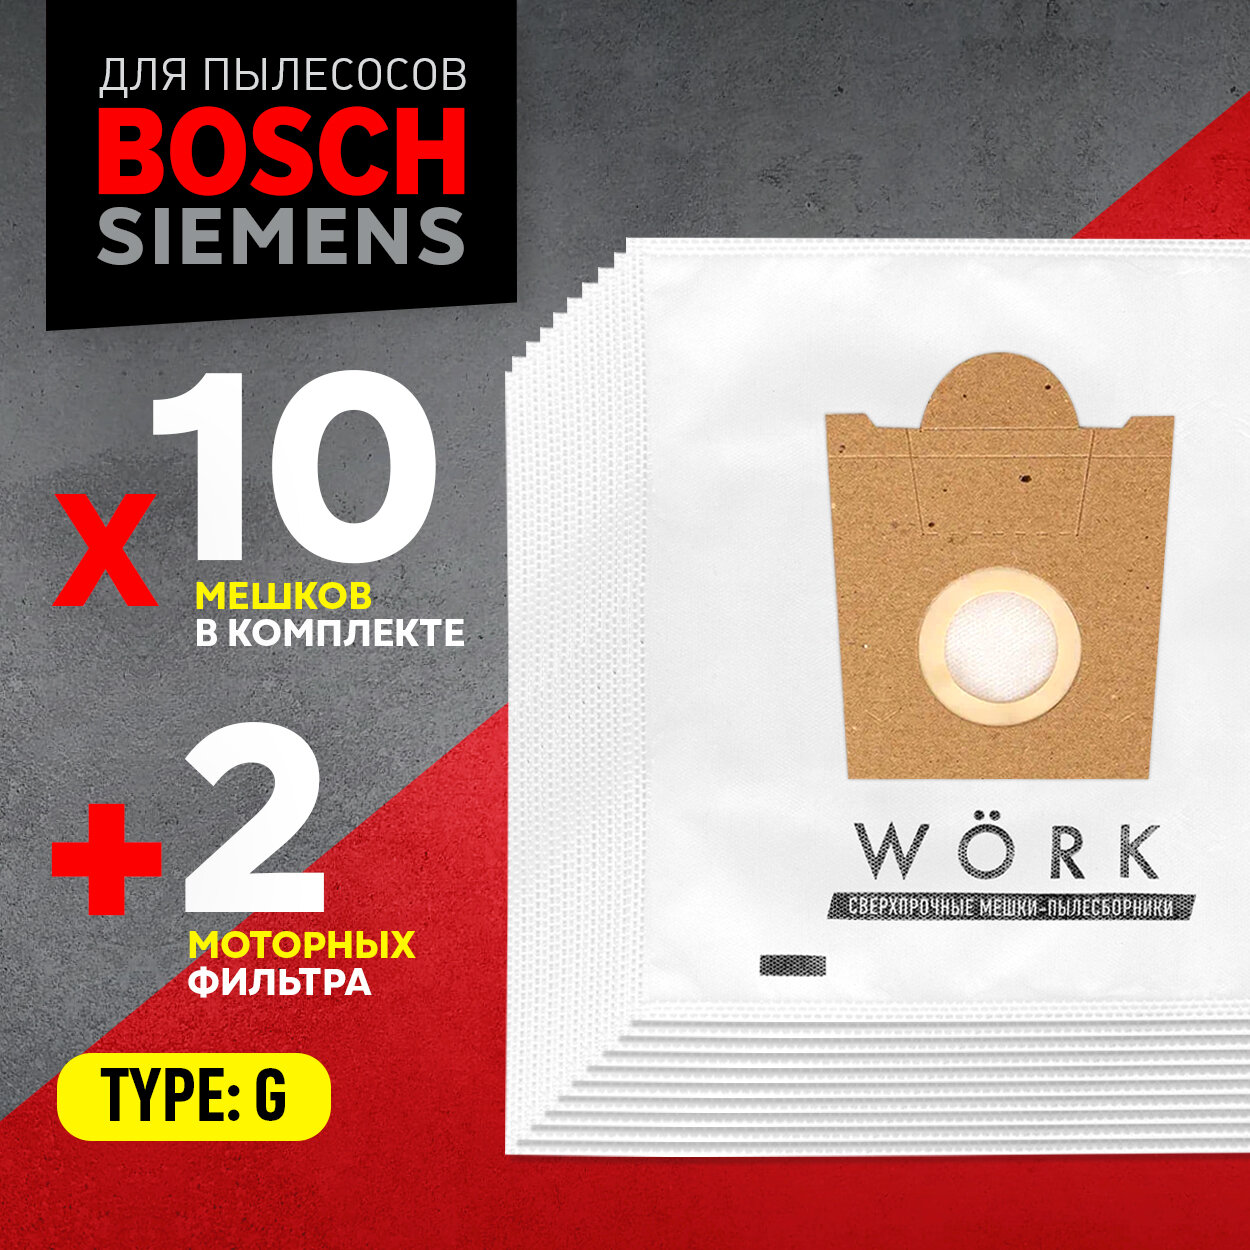 Мешки для пылесоса Bosch GL 30 / Бош GL 30, Karcher / Керхер, Тип: G. В комплекте: мешки пылесборники 10 шт. + 2 моторных фильтра